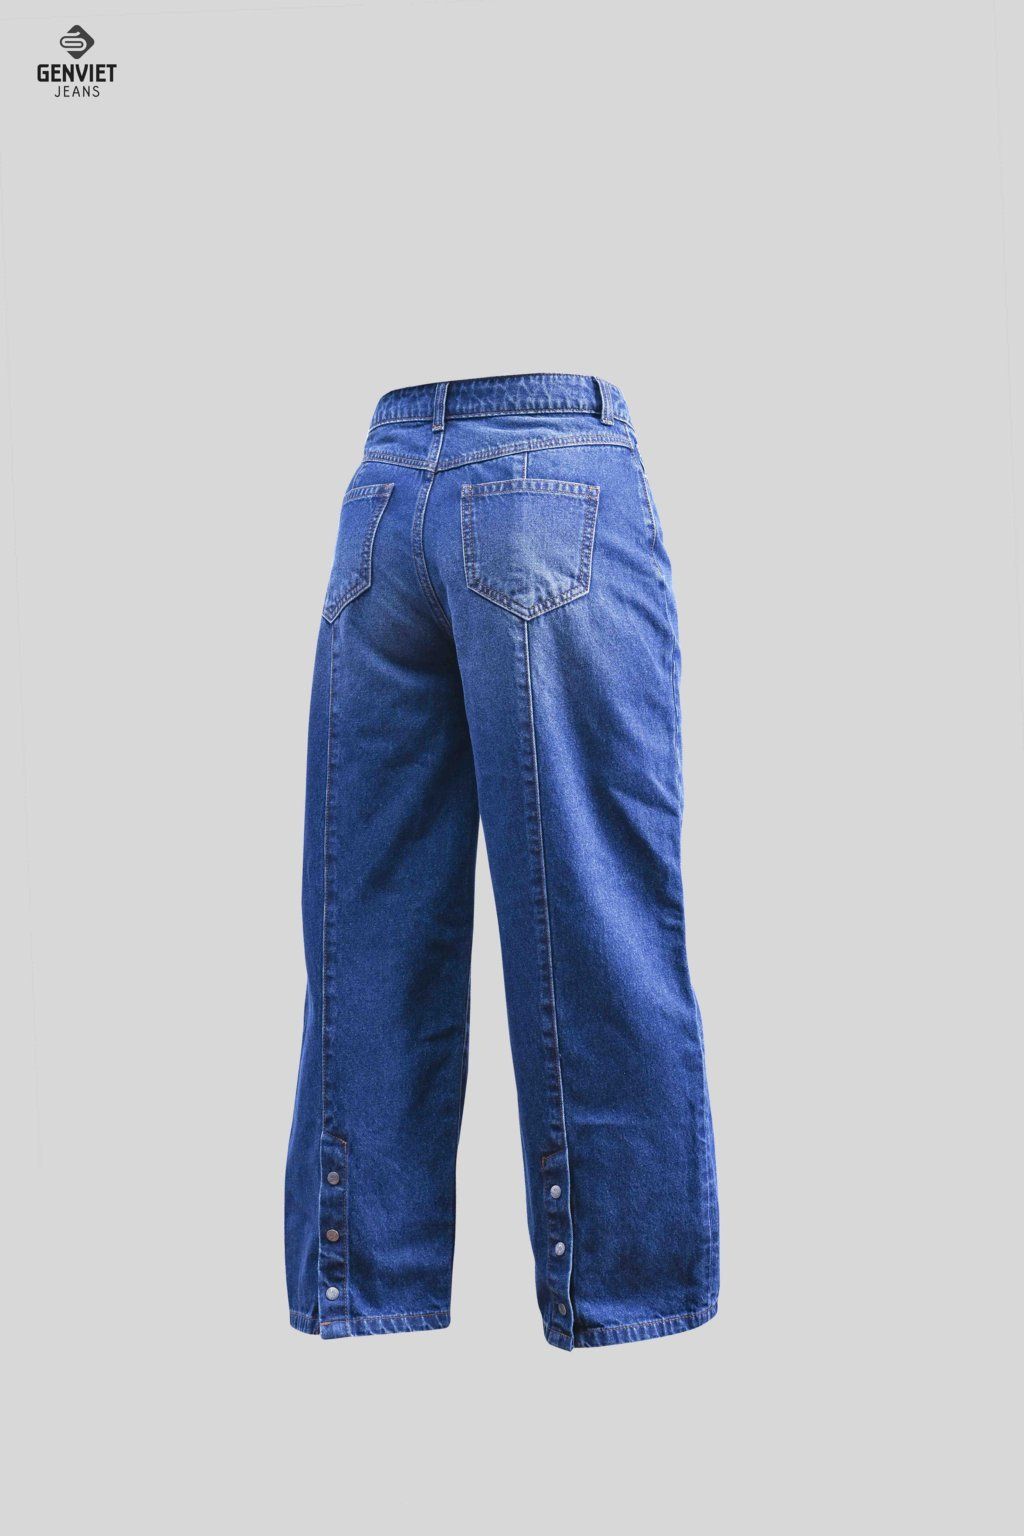  Quần Dài Nữ Jeans Suông TQ124J8156 